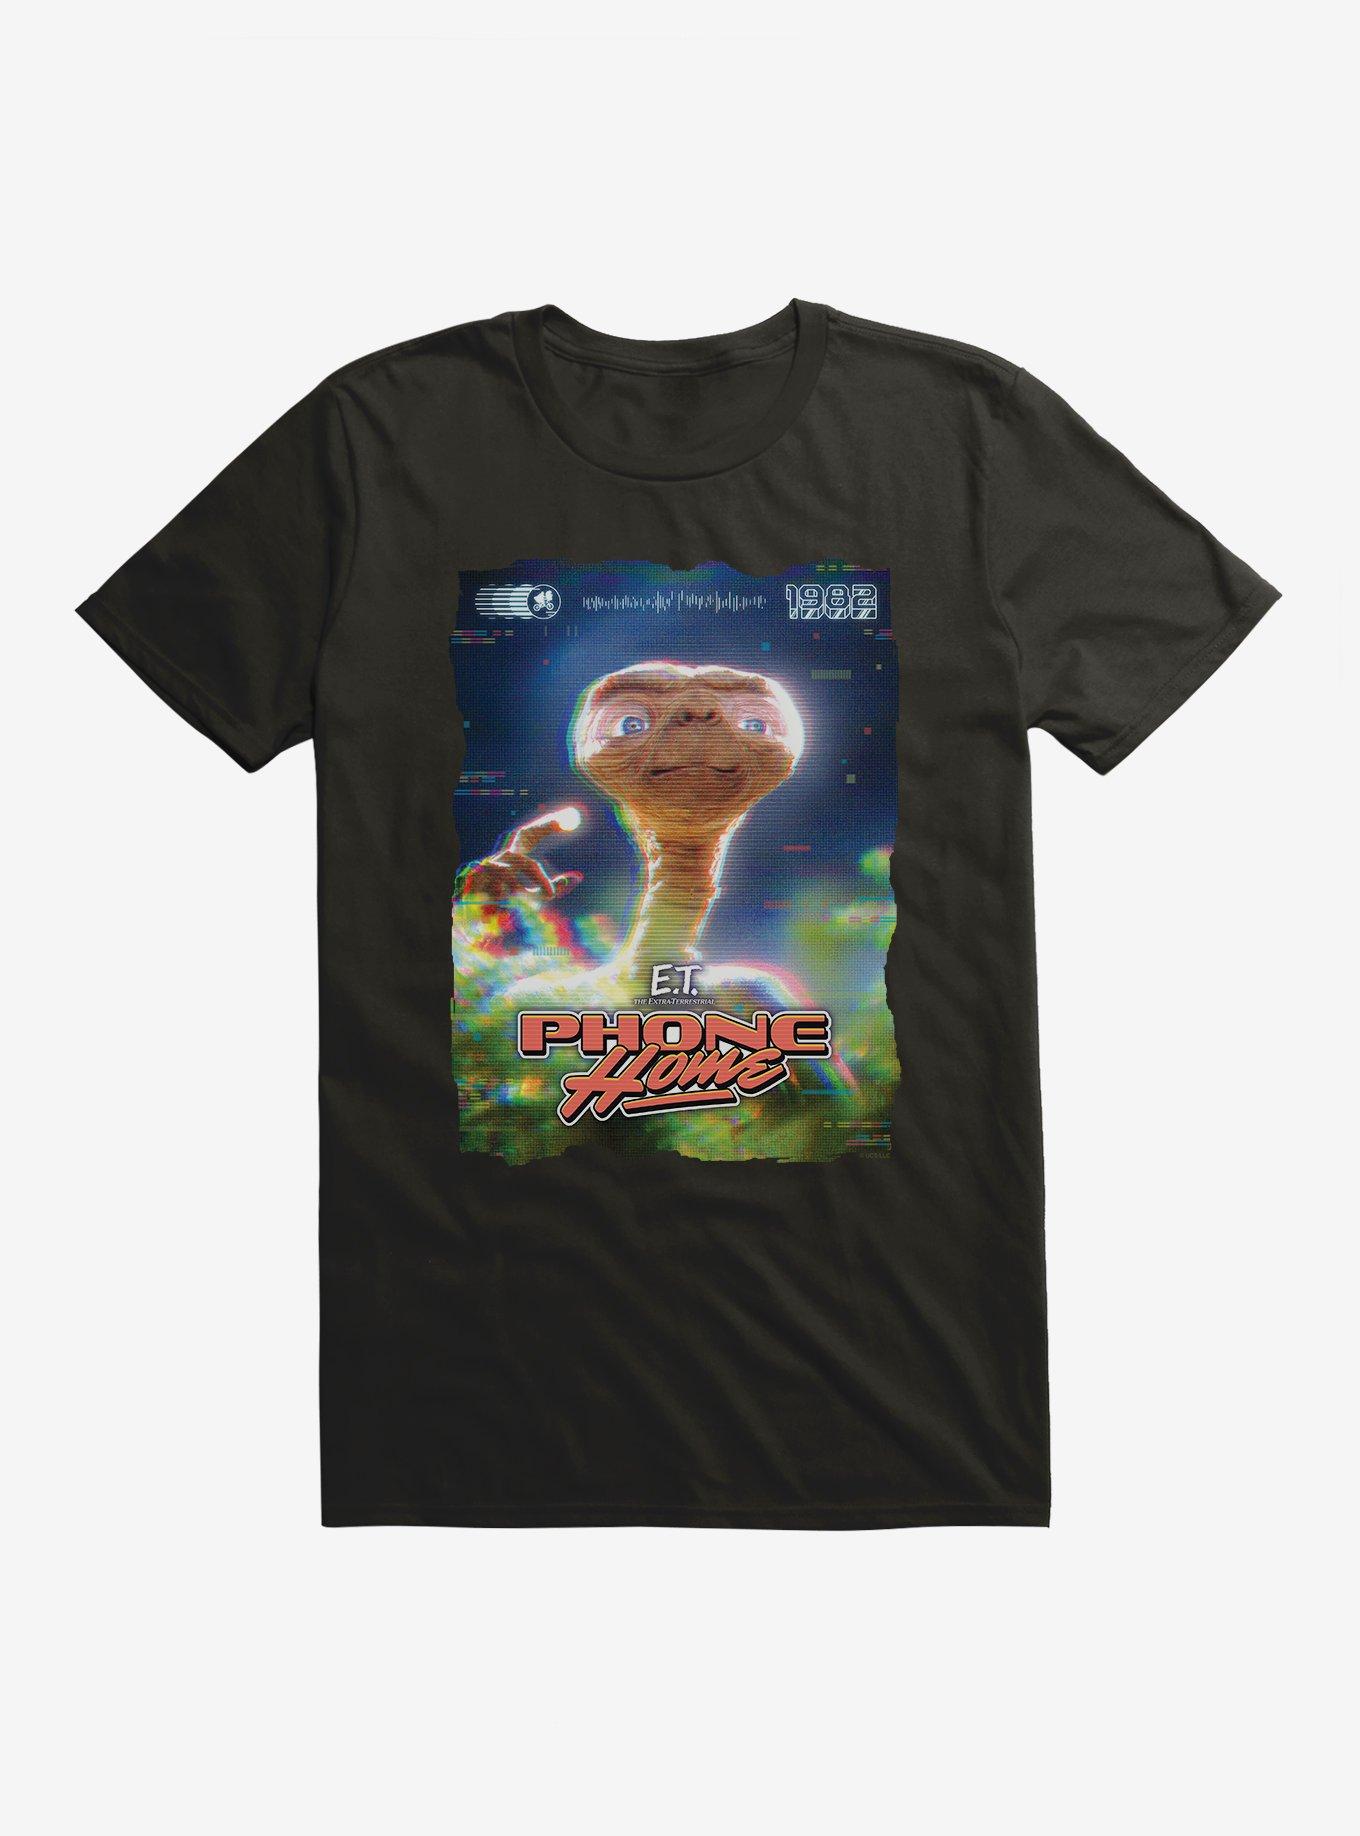 E.T. Phone Home 1982 82 T-Shirt